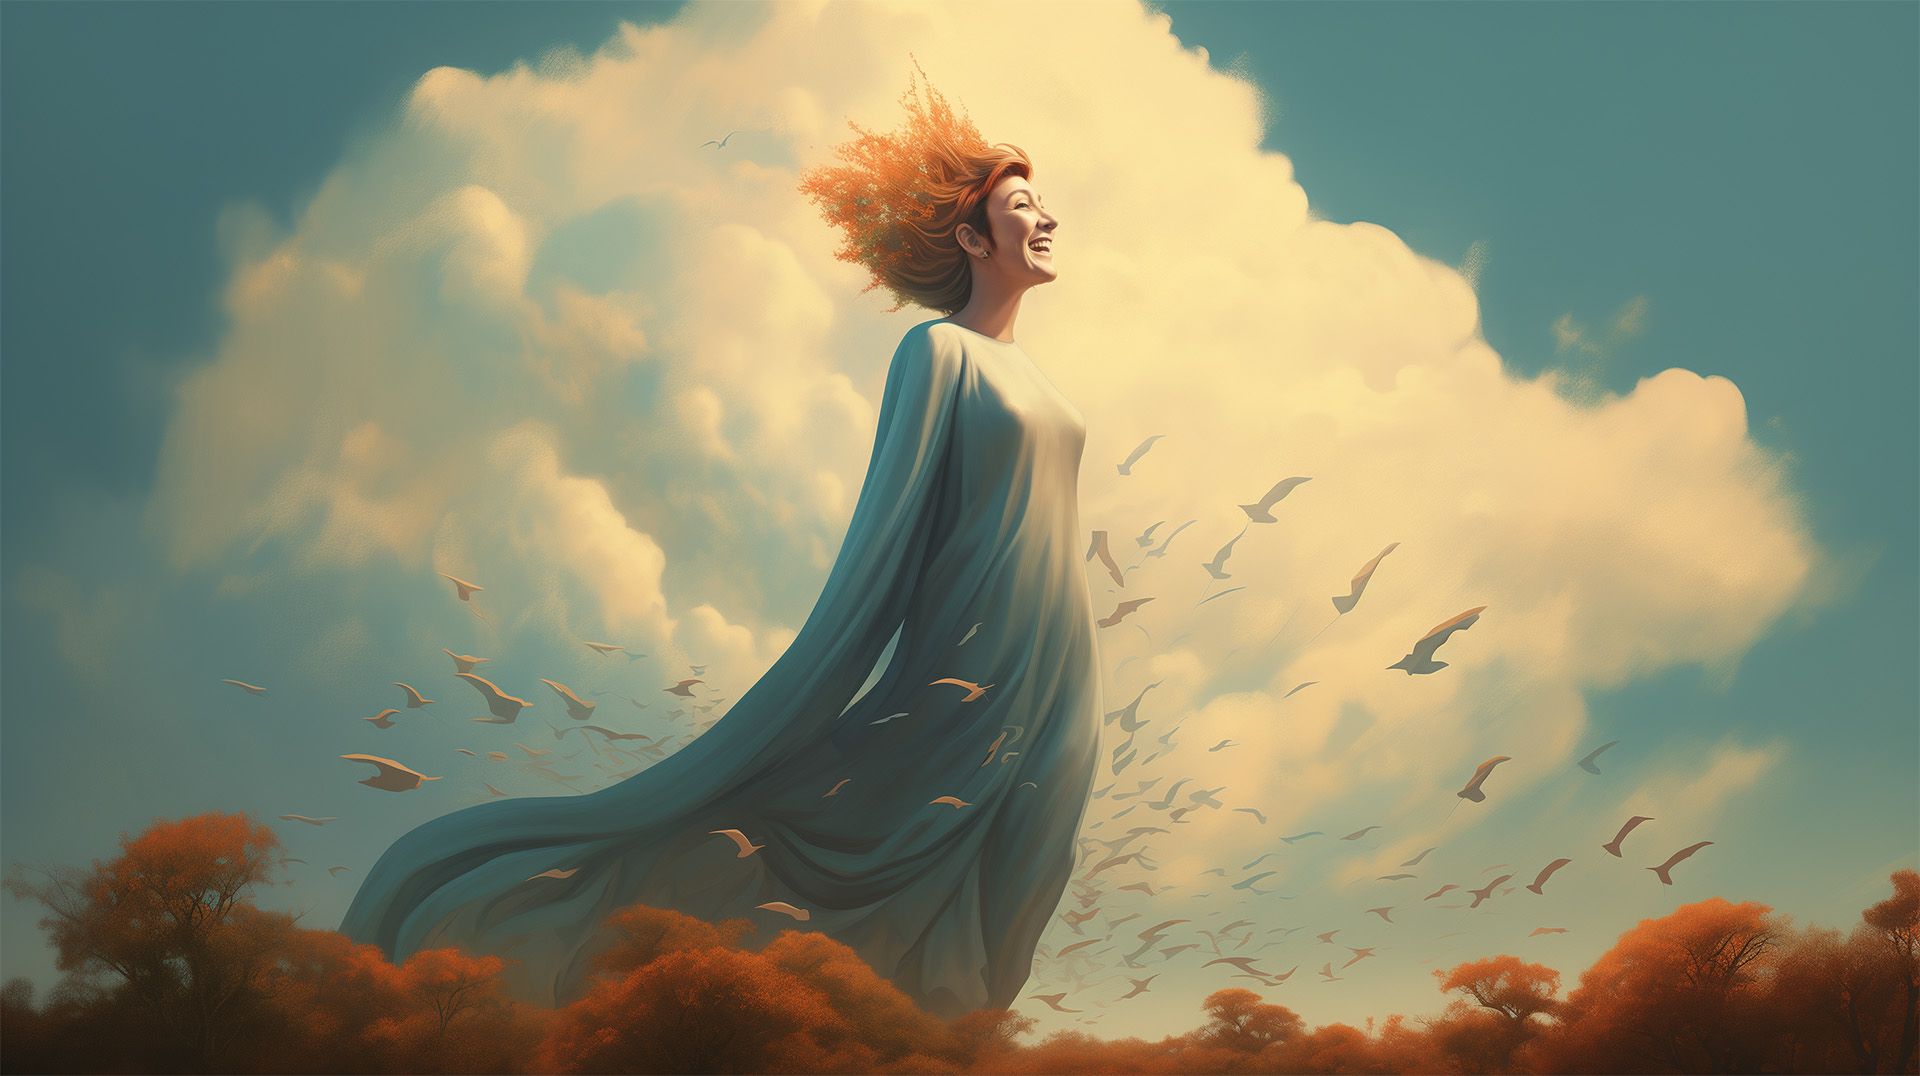 Artistieke afbeelding van een vrouw in een blauwe jurk met opwaaiend oranje haar, lachend naar de hemel, omgeven door vliegende vogels en herfstbomen